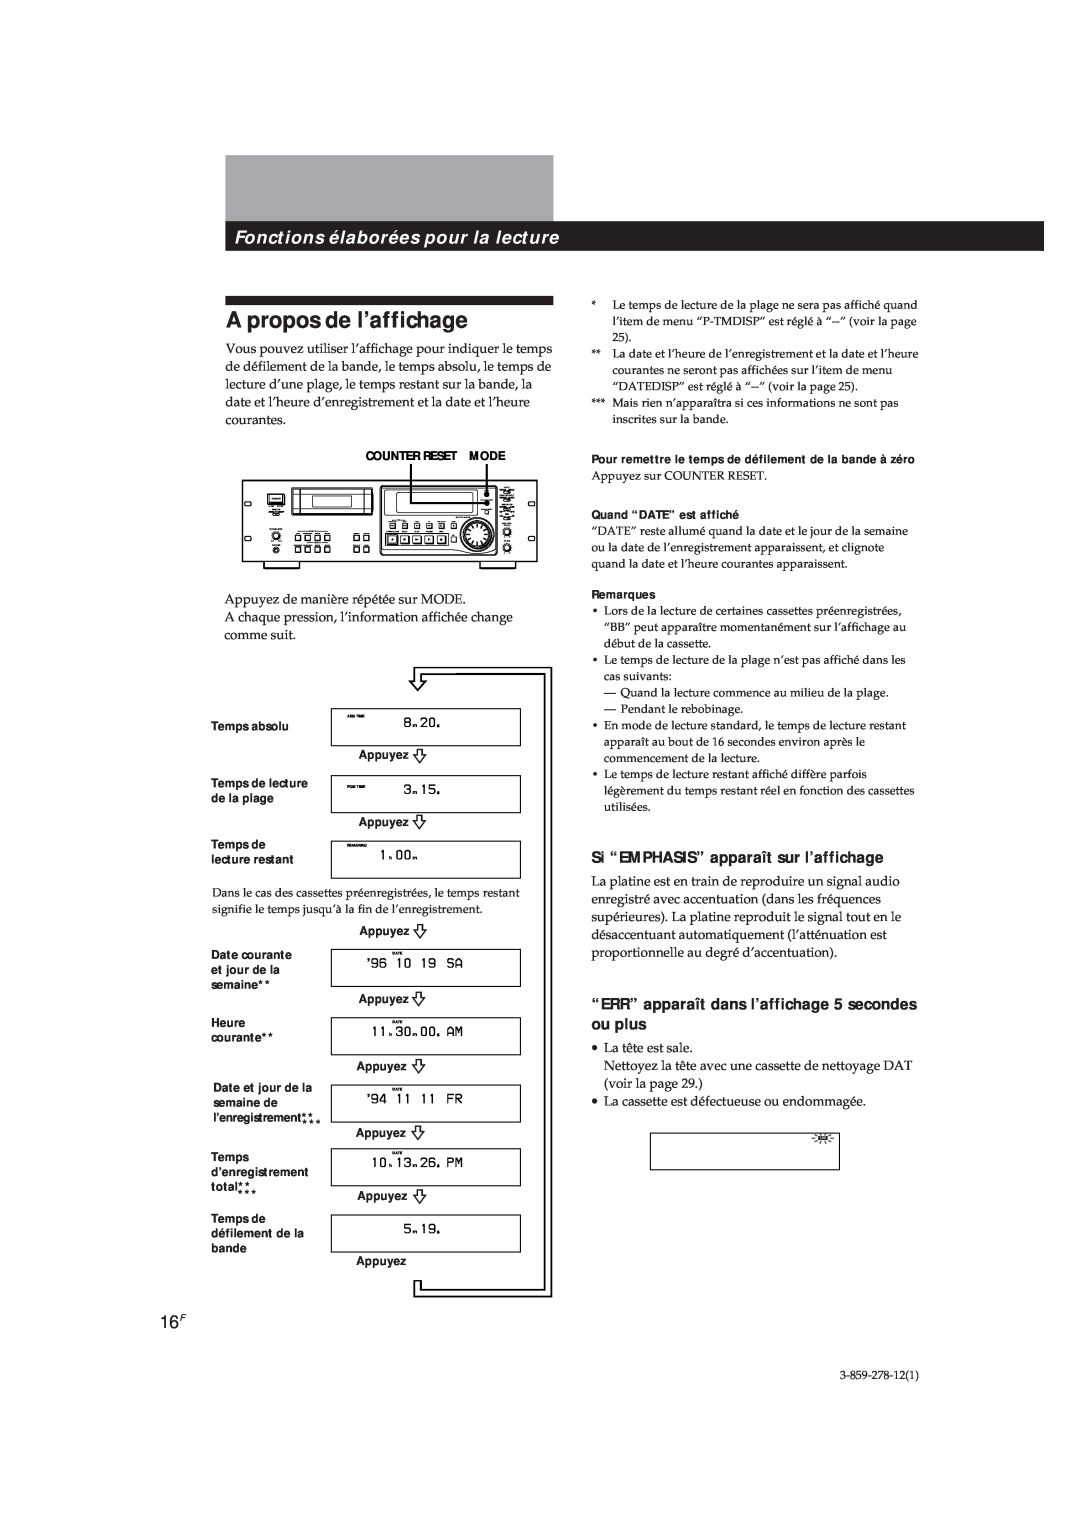 Sony PCM-R500 manual A propos de l’affichage, Fonctions élaborées pour la lecture, Si “EMPHASIS” apparaît sur l’affichage 